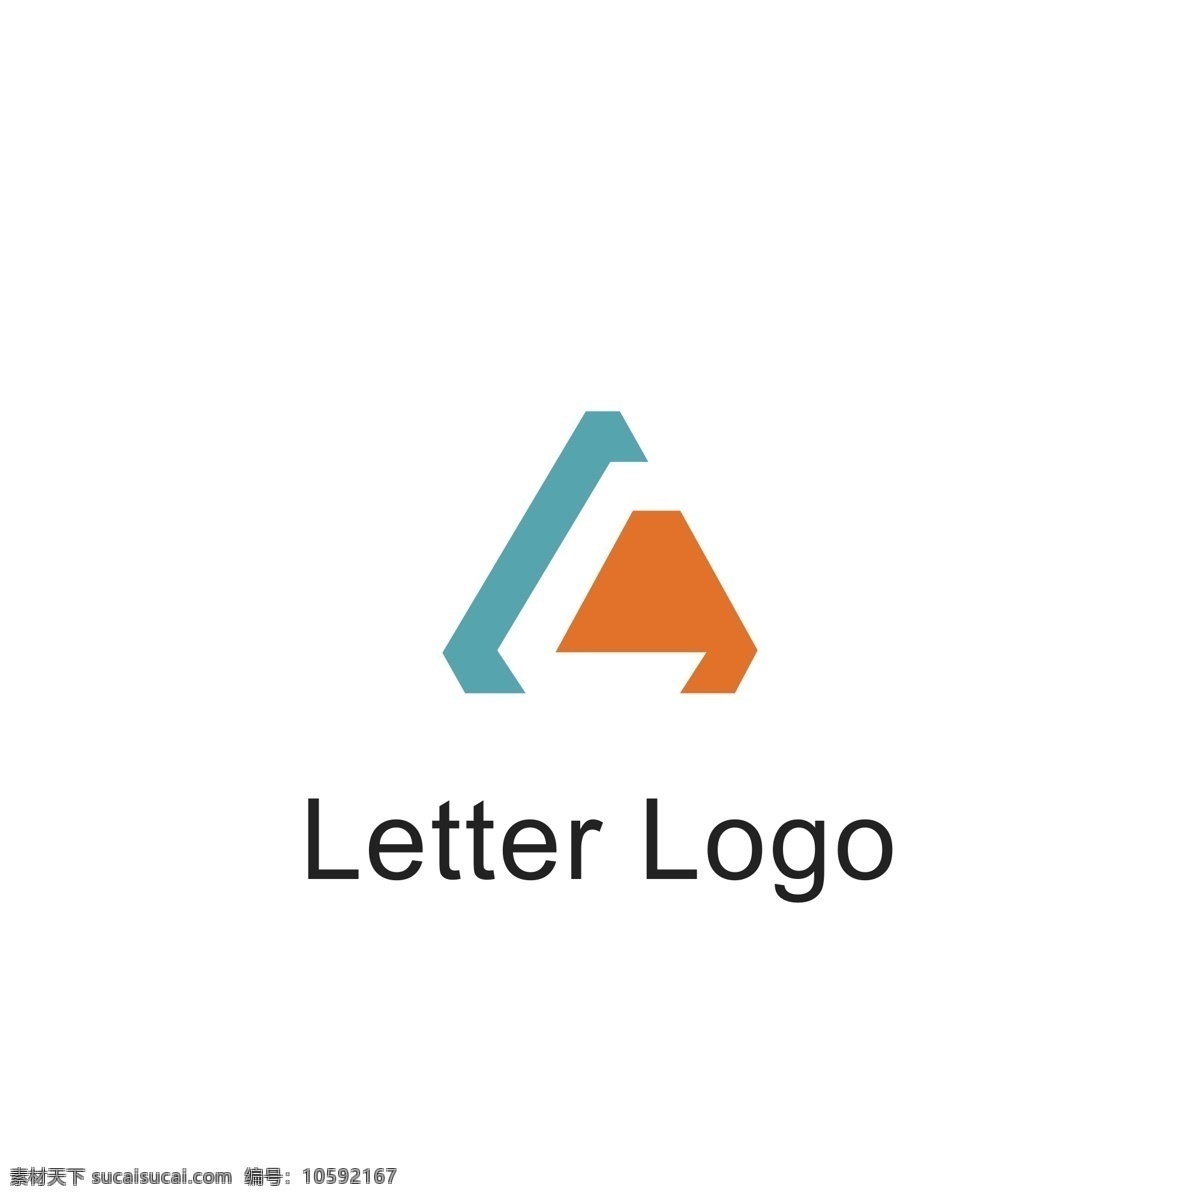 字母 变形 logo 字母logo 字母g 字母变形 简约时尚 通用logo logo设计 几何logo 标识设计 标志设计 ai矢量